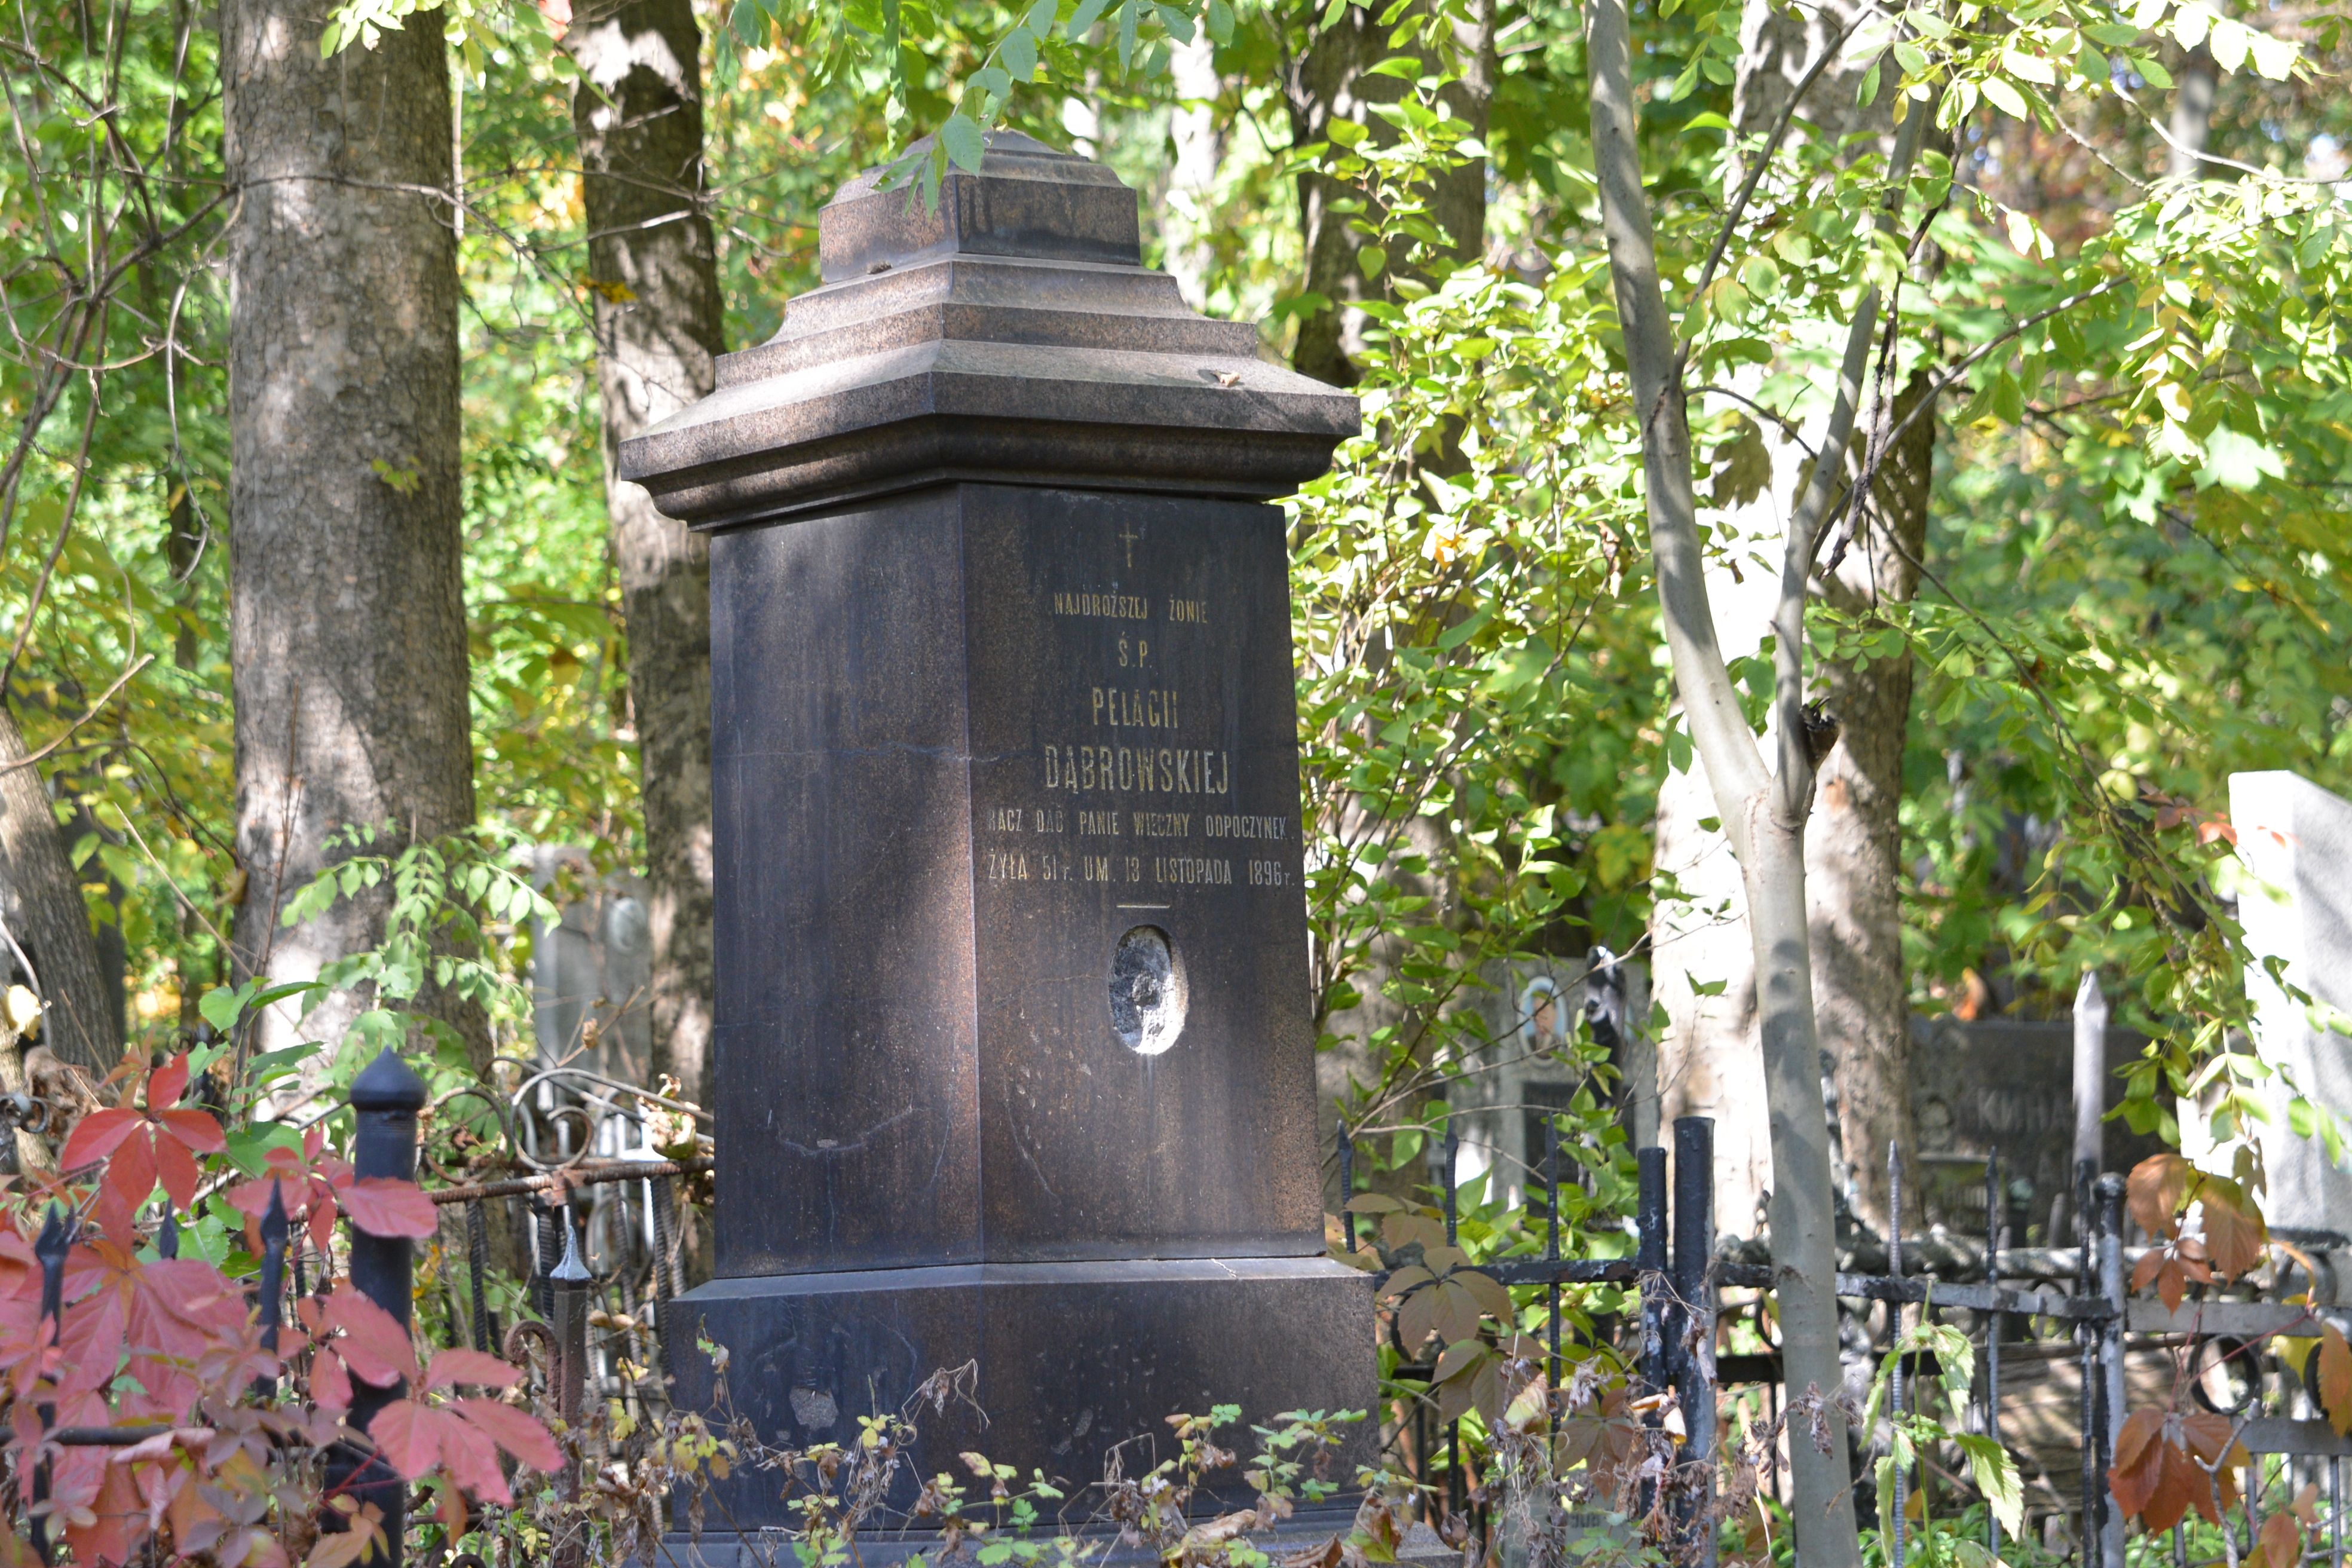 Вид збоку на надгробний пам'ятник у вигляді високого цоколя. З передньої частини пам'ятника видно напис і місце після фотографії. Все це обрамлено металевою огорожею, на задньому плані - дерева та інші надгробні пам'ятники